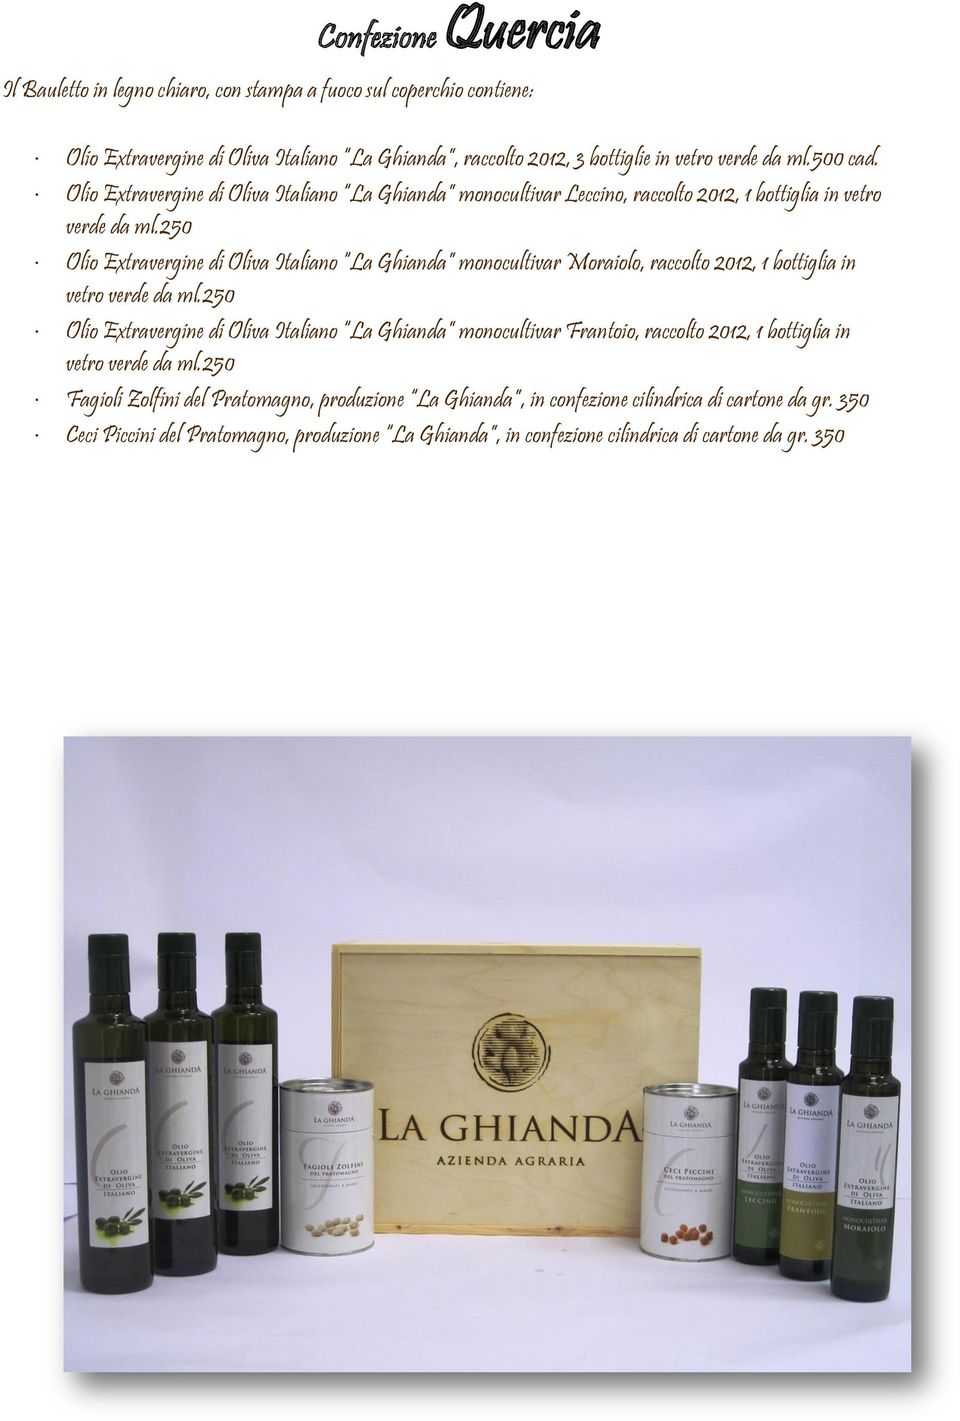 250 Olio Extravergine di Oliva Italiano La Ghianda monocultivar Moraiolo, raccolto 2012, 1 bottiglia in vetro verde da ml.